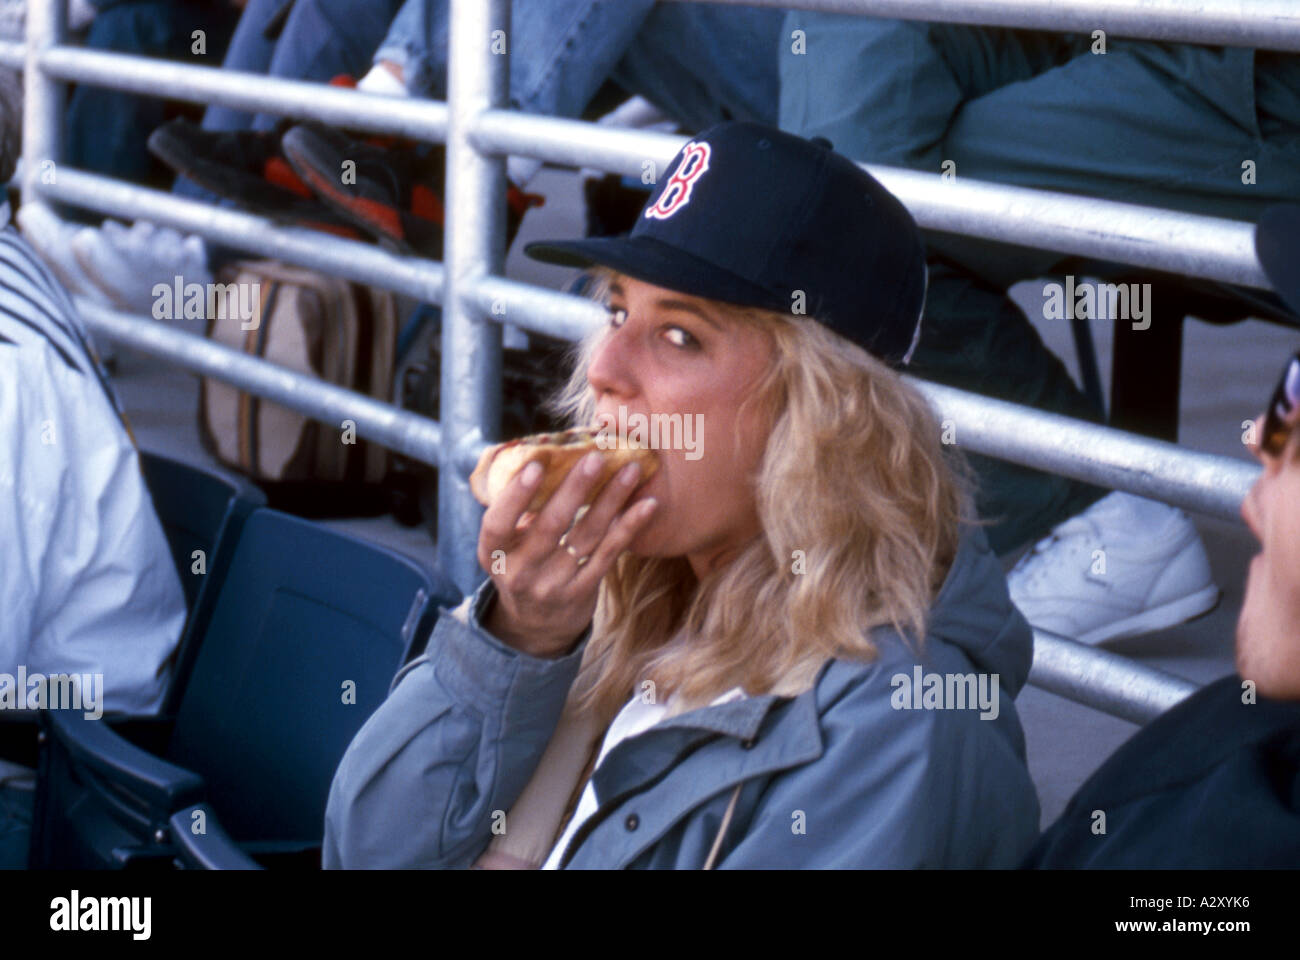 Girl eating hot dog at baseball game. Stock Photo